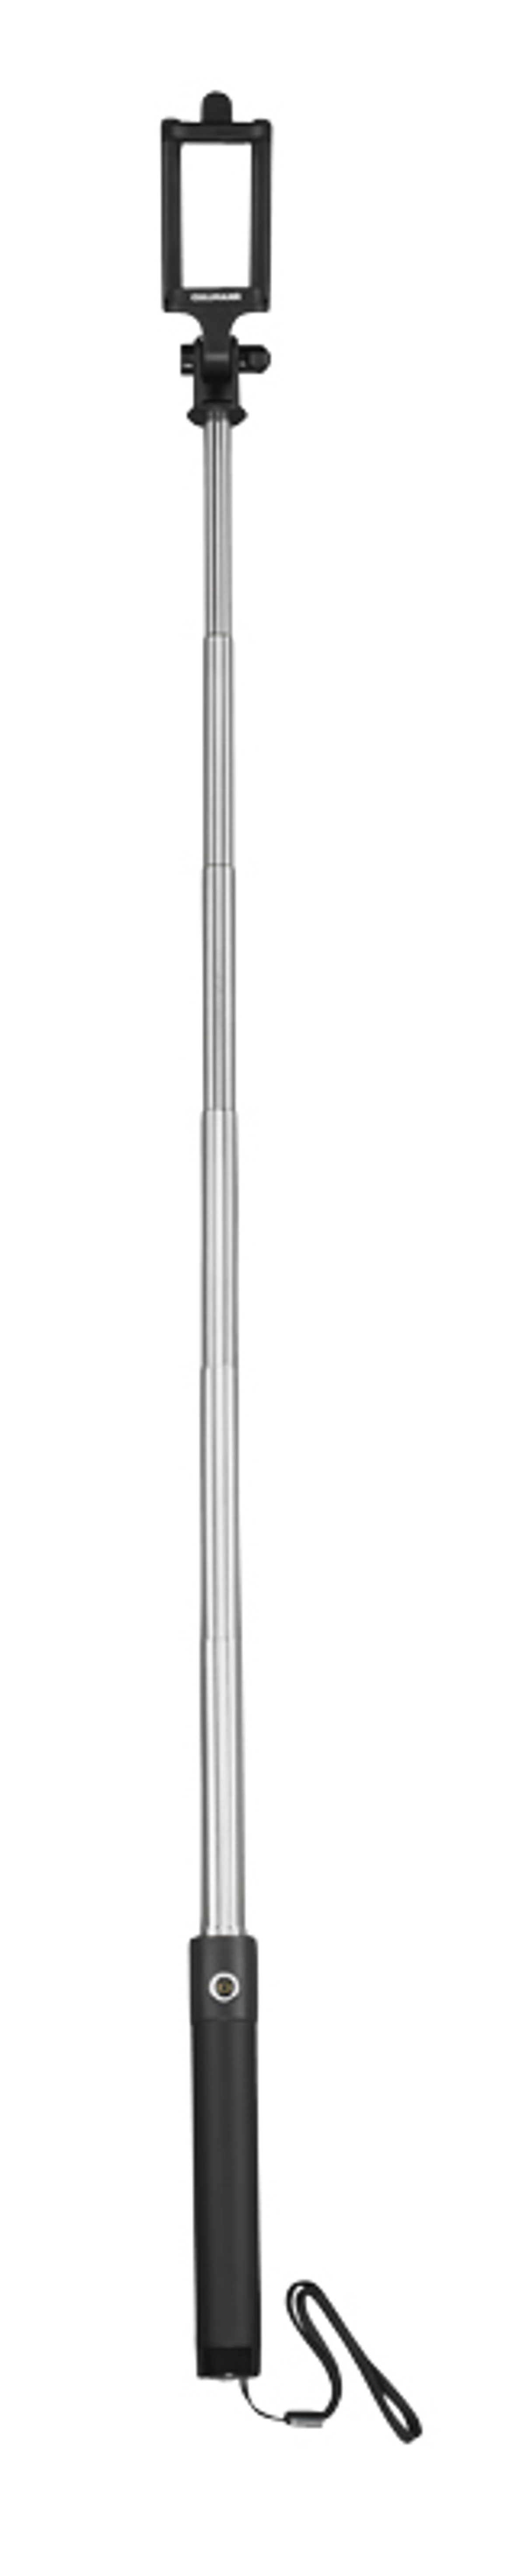 Schwarz/Silber, 50110 offen Selfie MIT CULLMANN Stick, 76 SILBER cm bis BLUETOOTH®-FUNKTION SELFIE-STICK Höhe